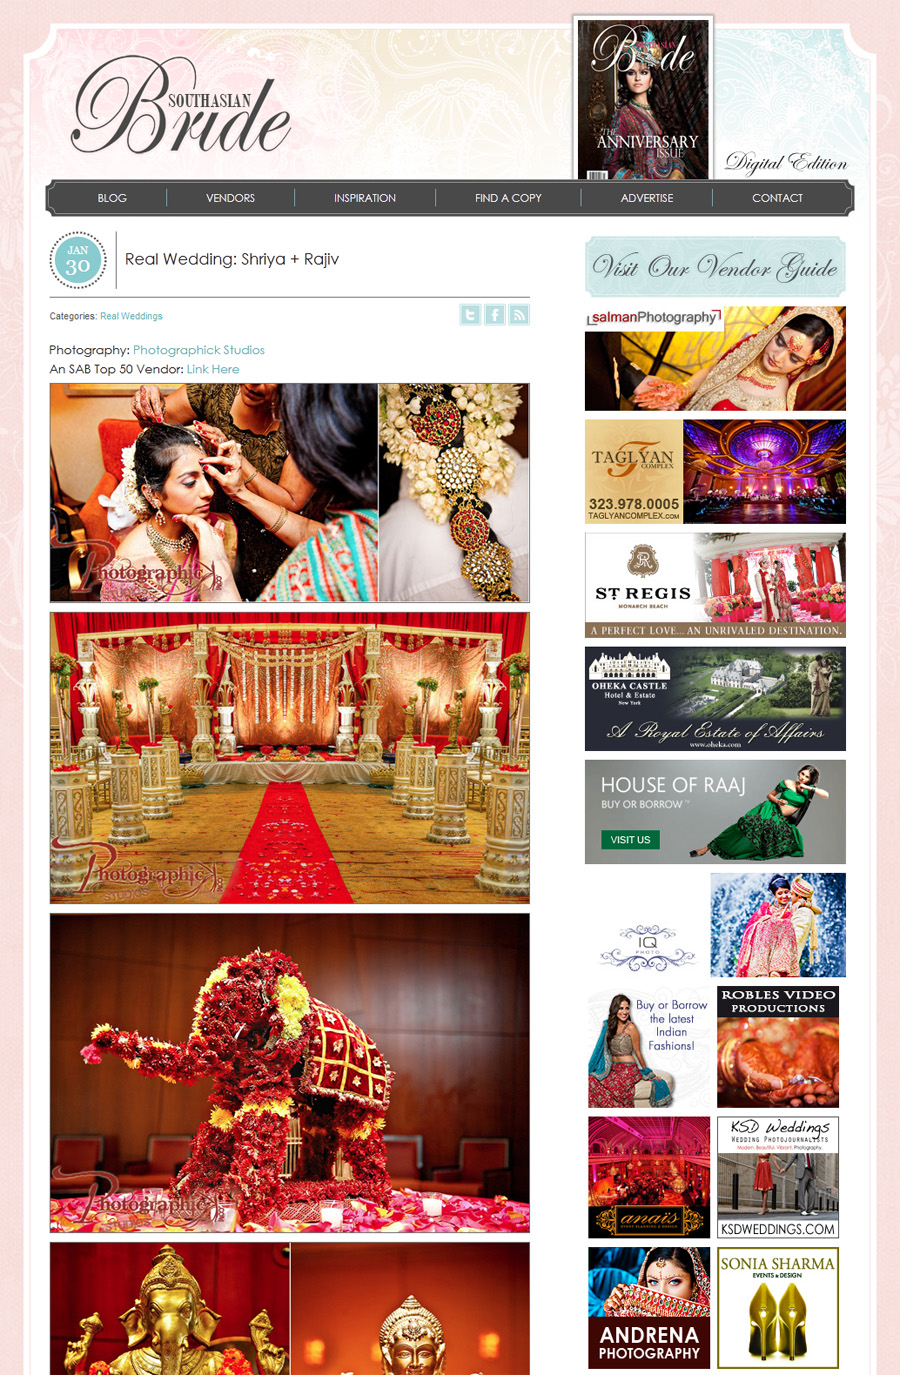 , Washington DC Wedding Photographer Published on South Asian Bride Magazine